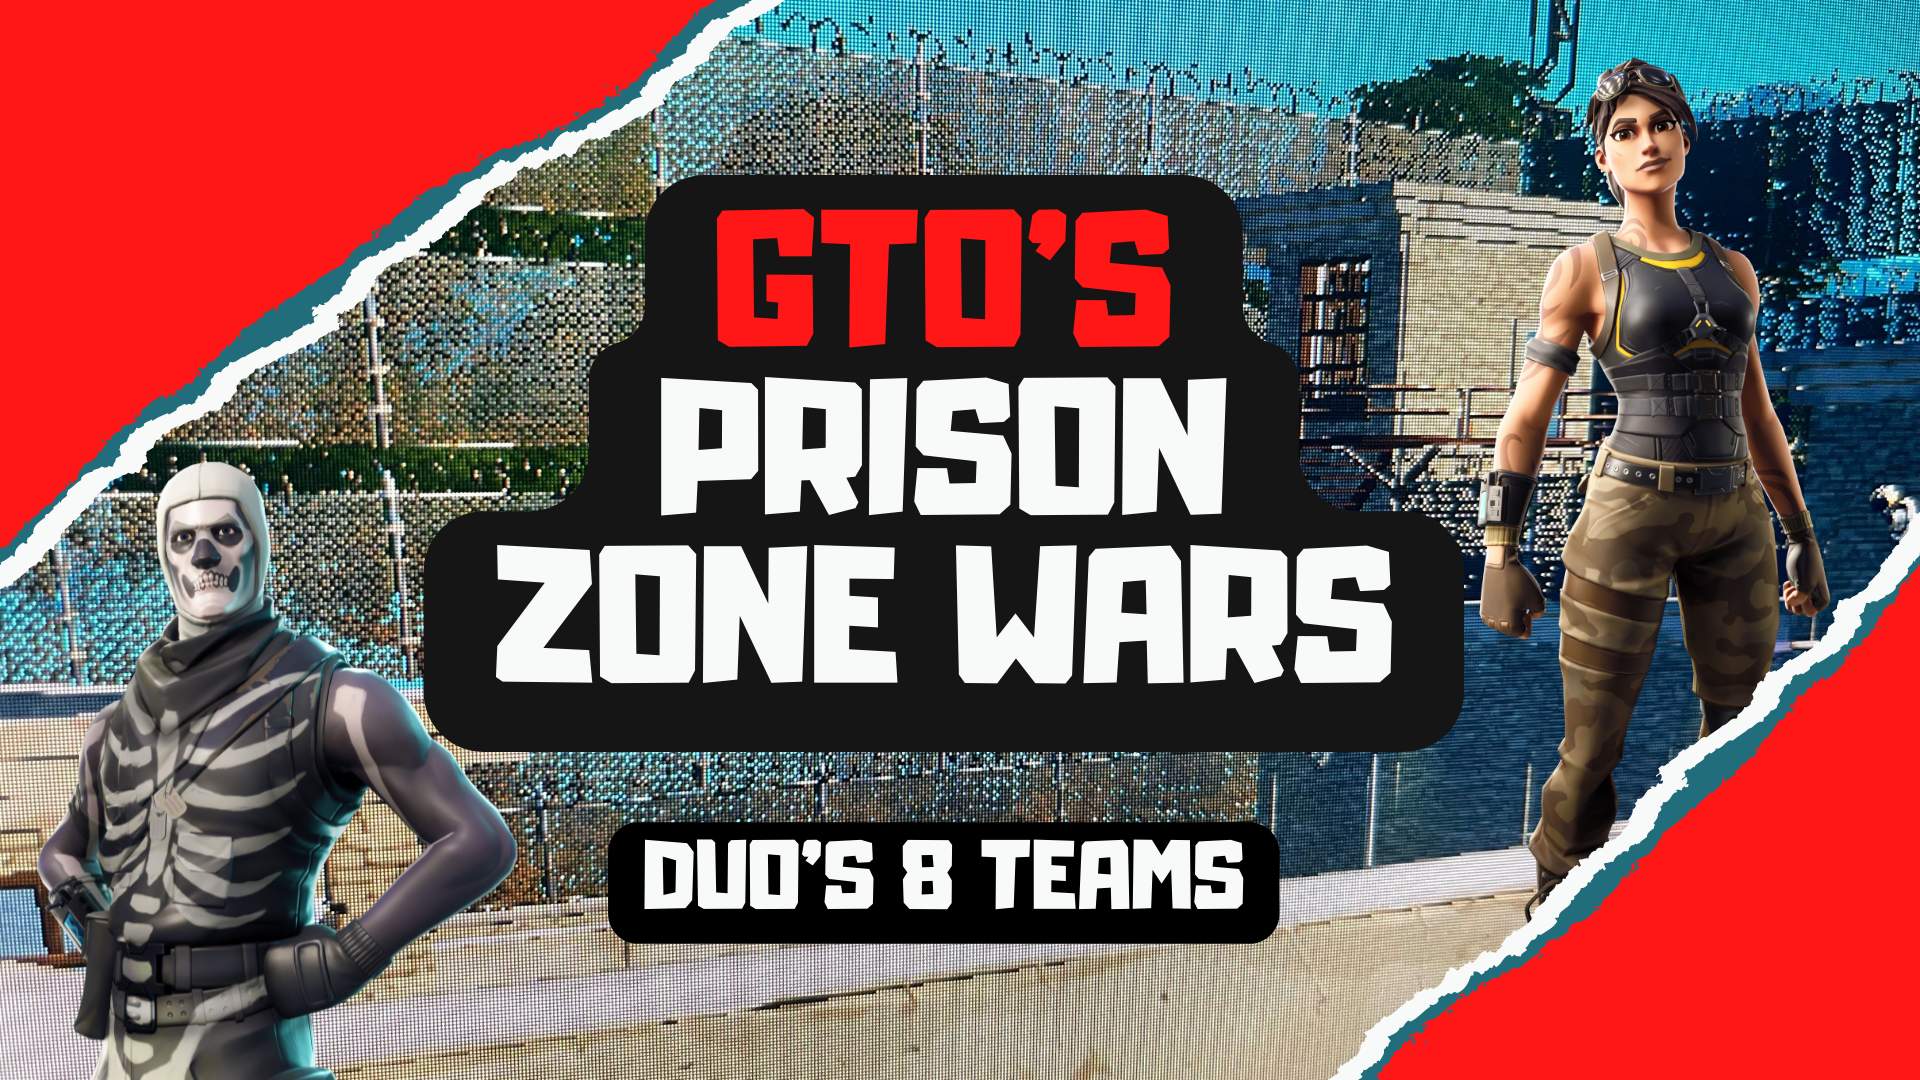 GTO'S PRISON ZONE WARS